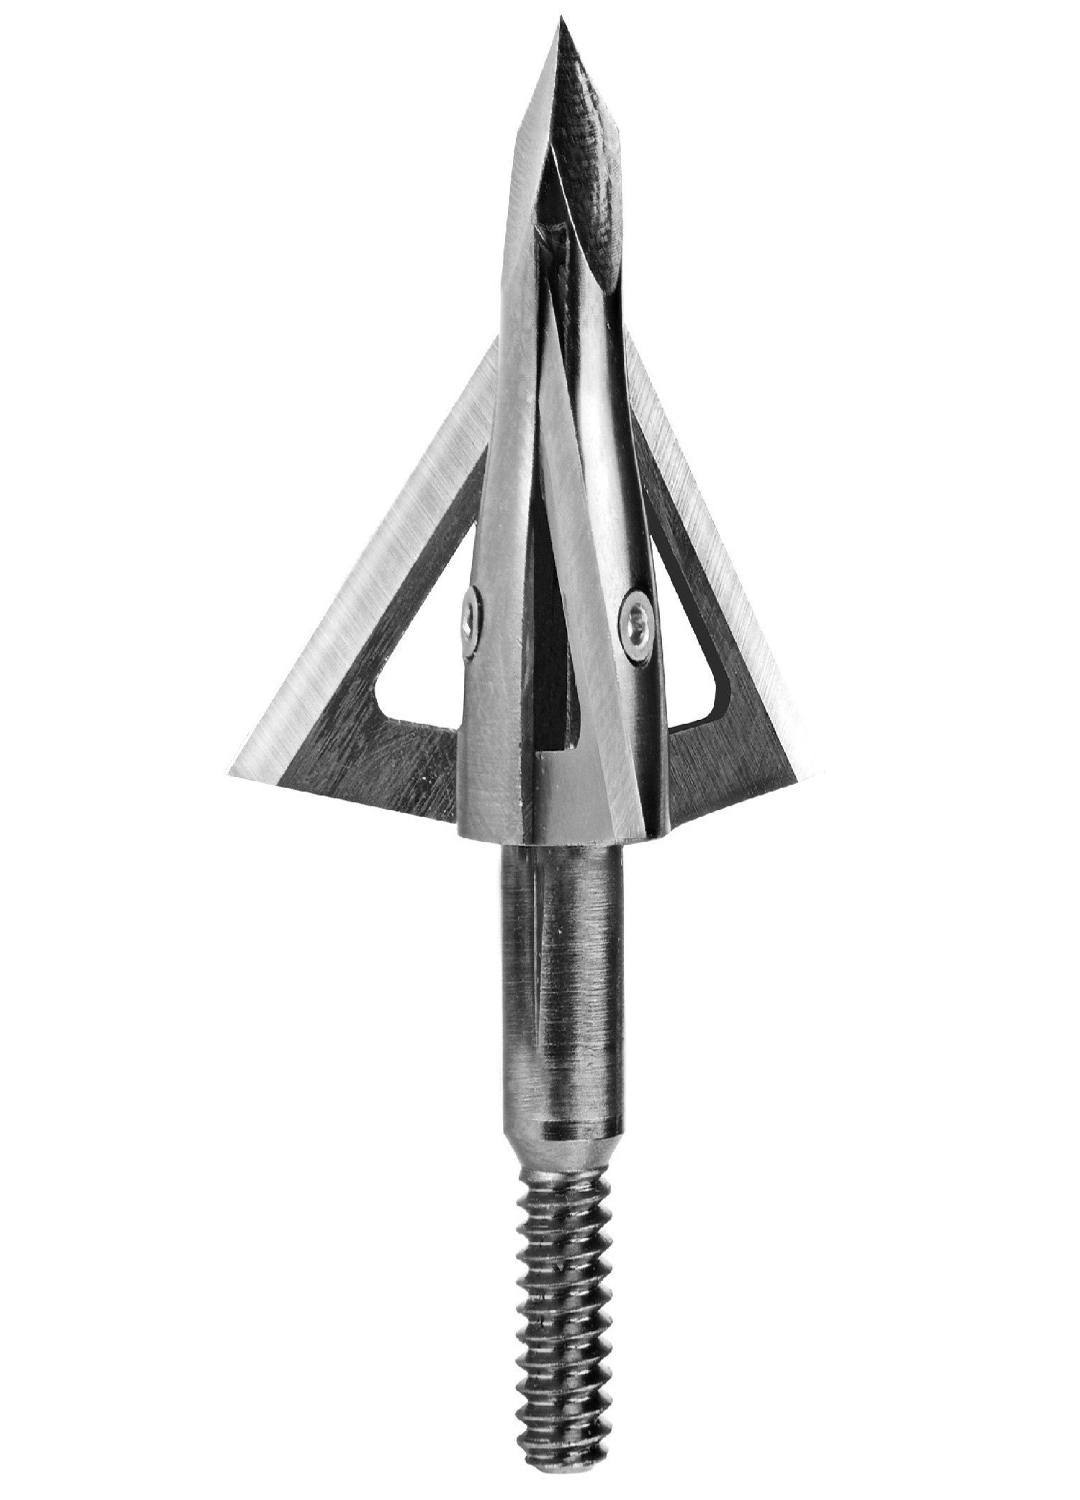 Muzzy Trocar Crossbow - Broadhead, 3 Blade, 125 grain